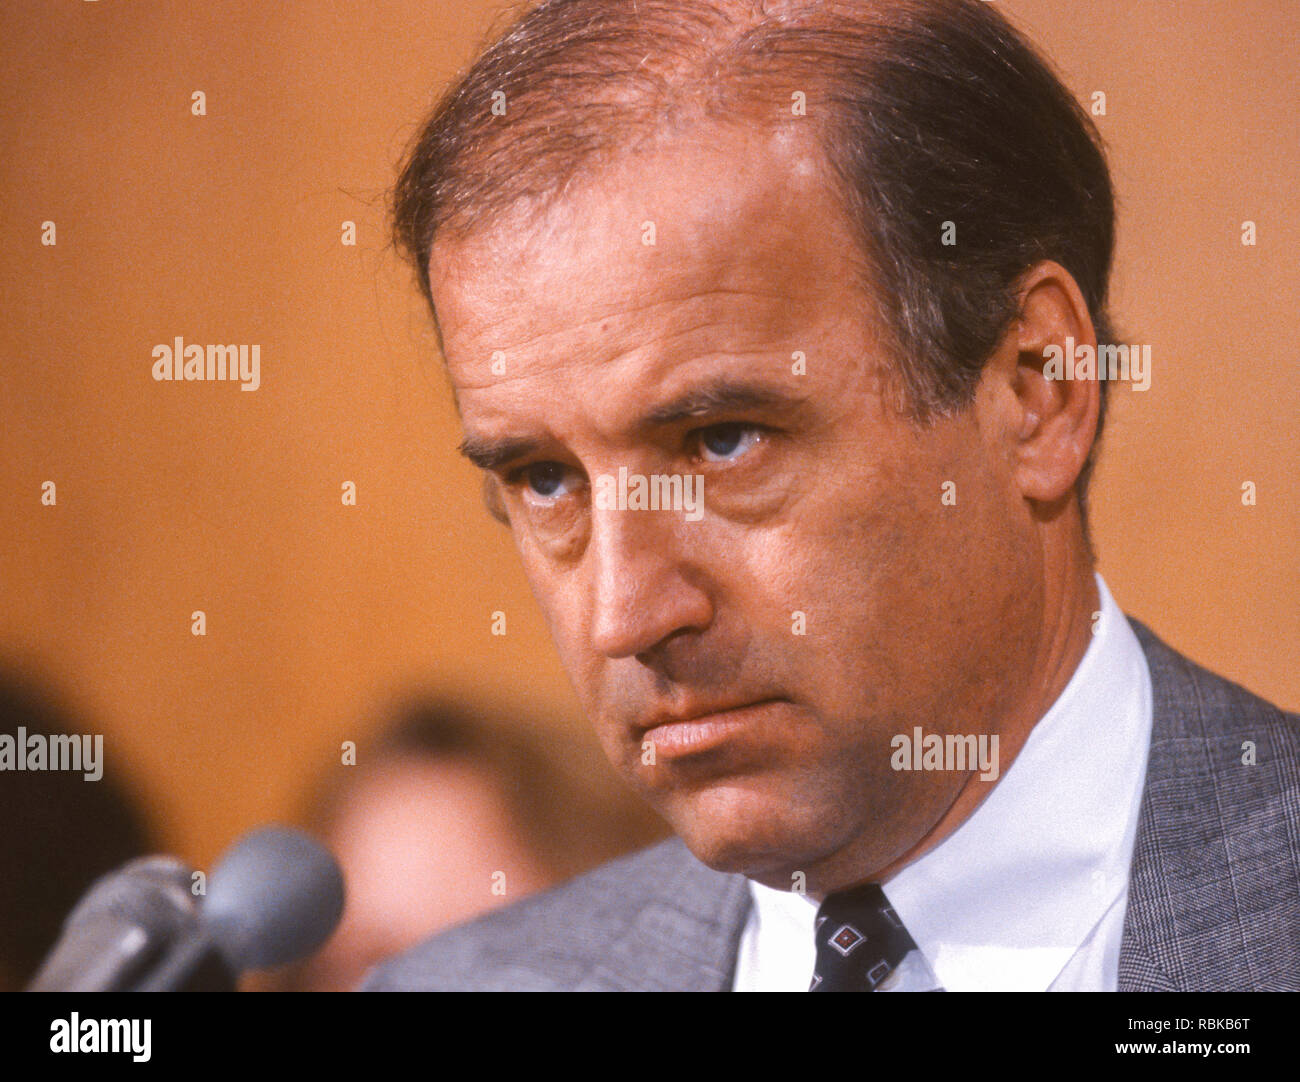 WASHINGTON, DC, USA - 19 mars 1991 : Le sénateur américain Joseph Biden (D-New York), Président du Comité judiciaire du Sénat des États-Unis. Banque D'Images